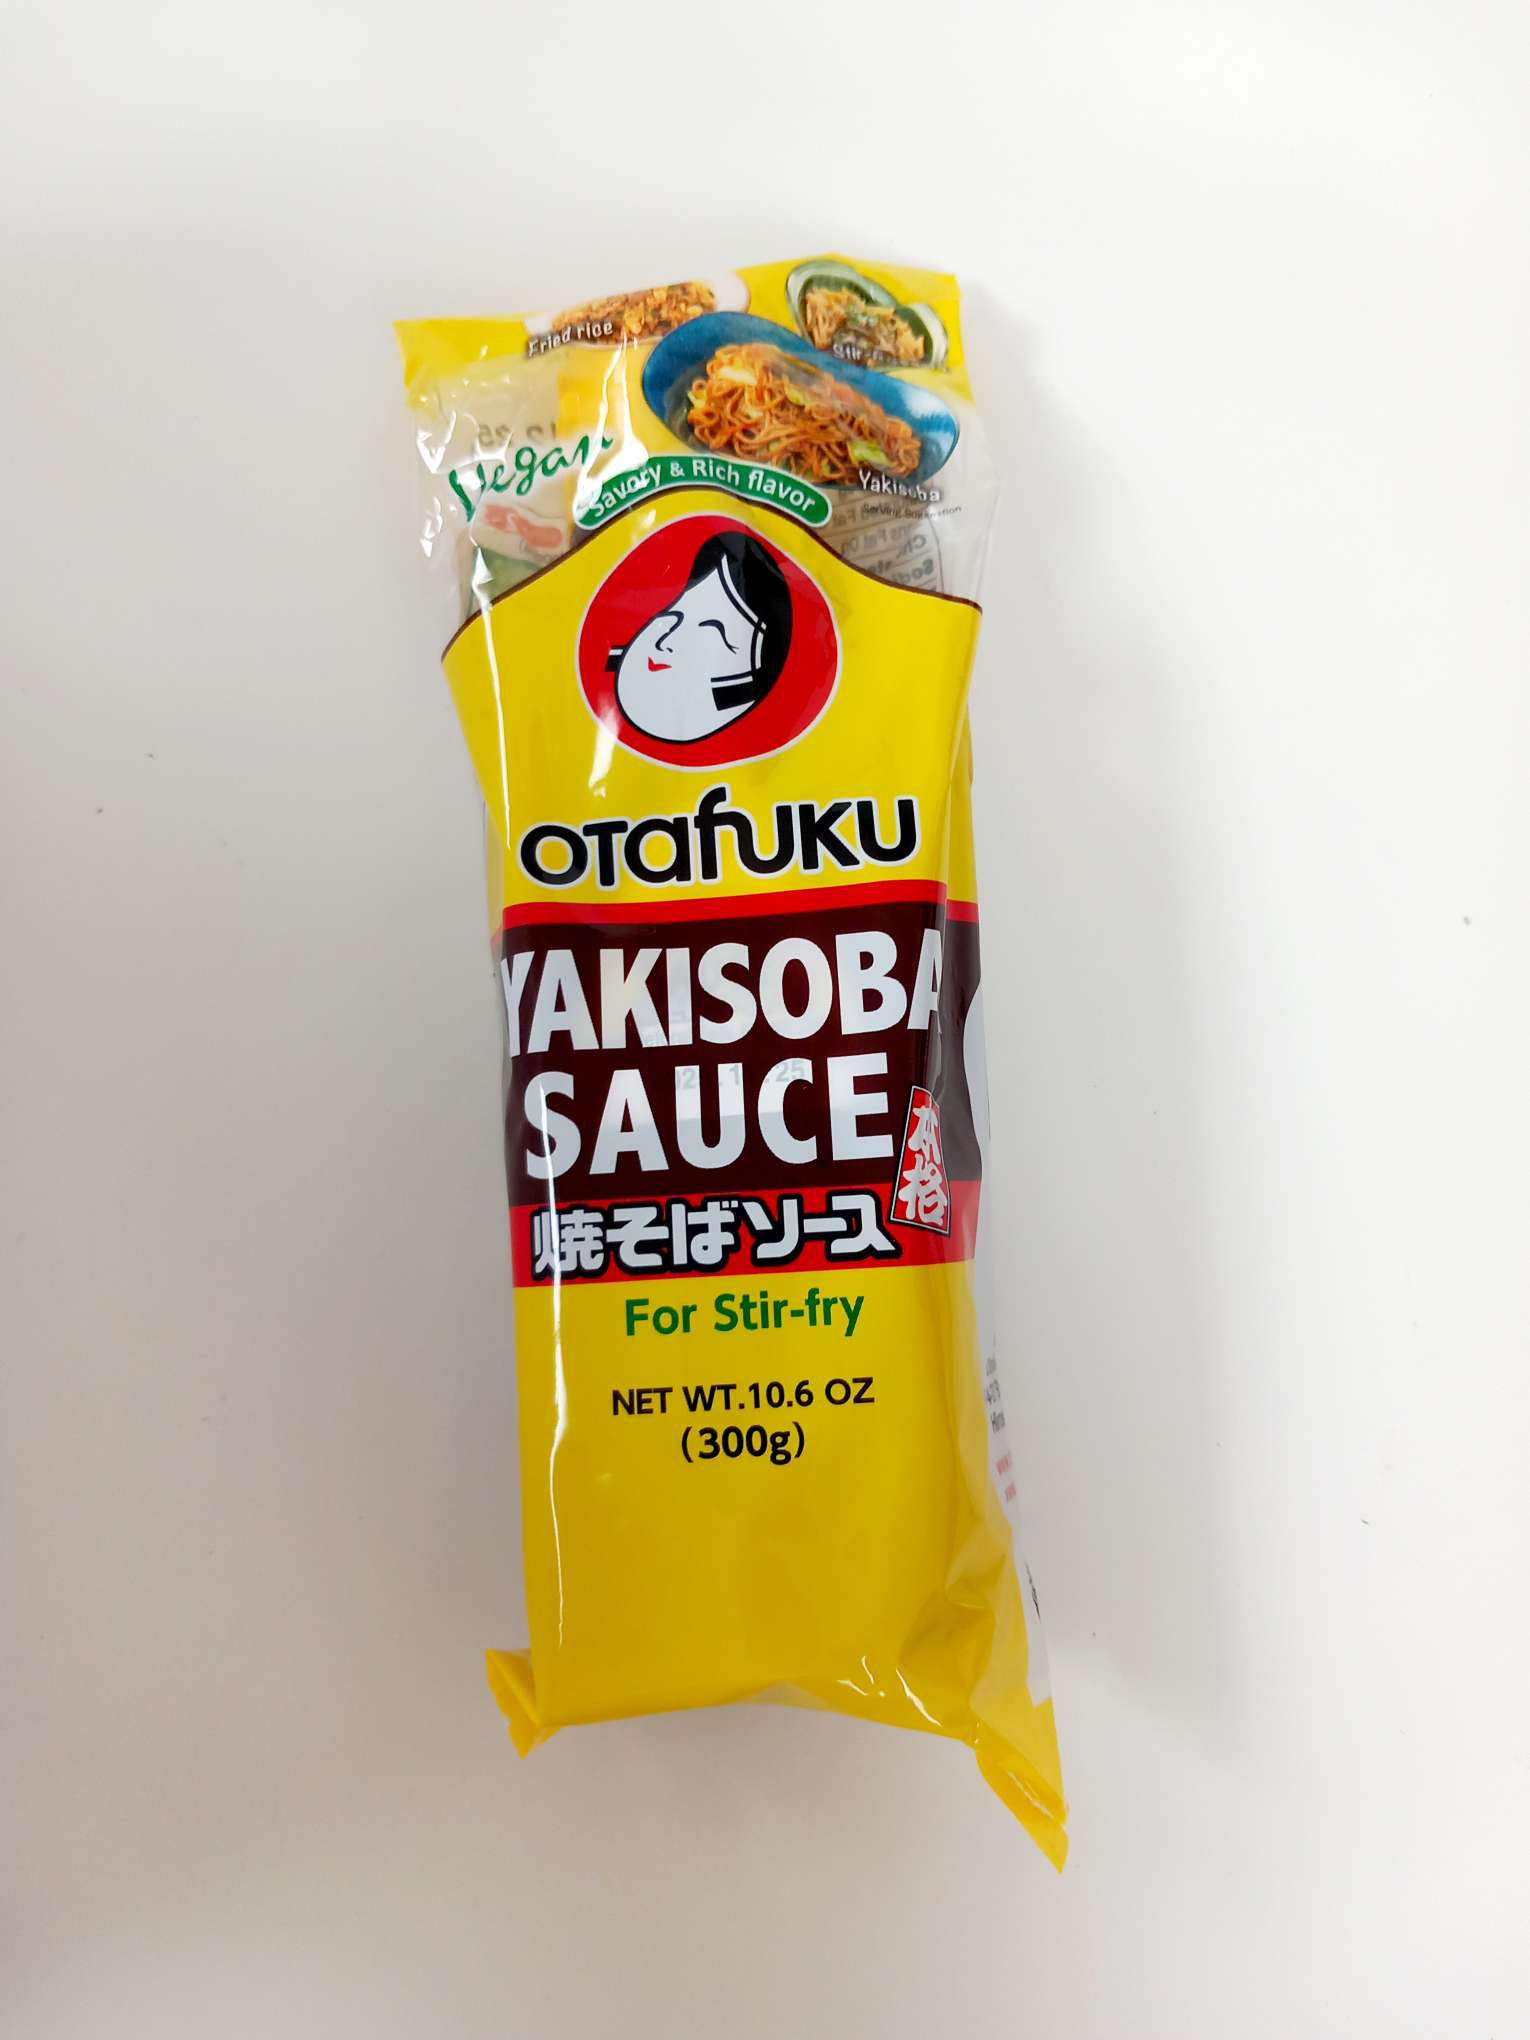 Sauce Yakisoba 300g